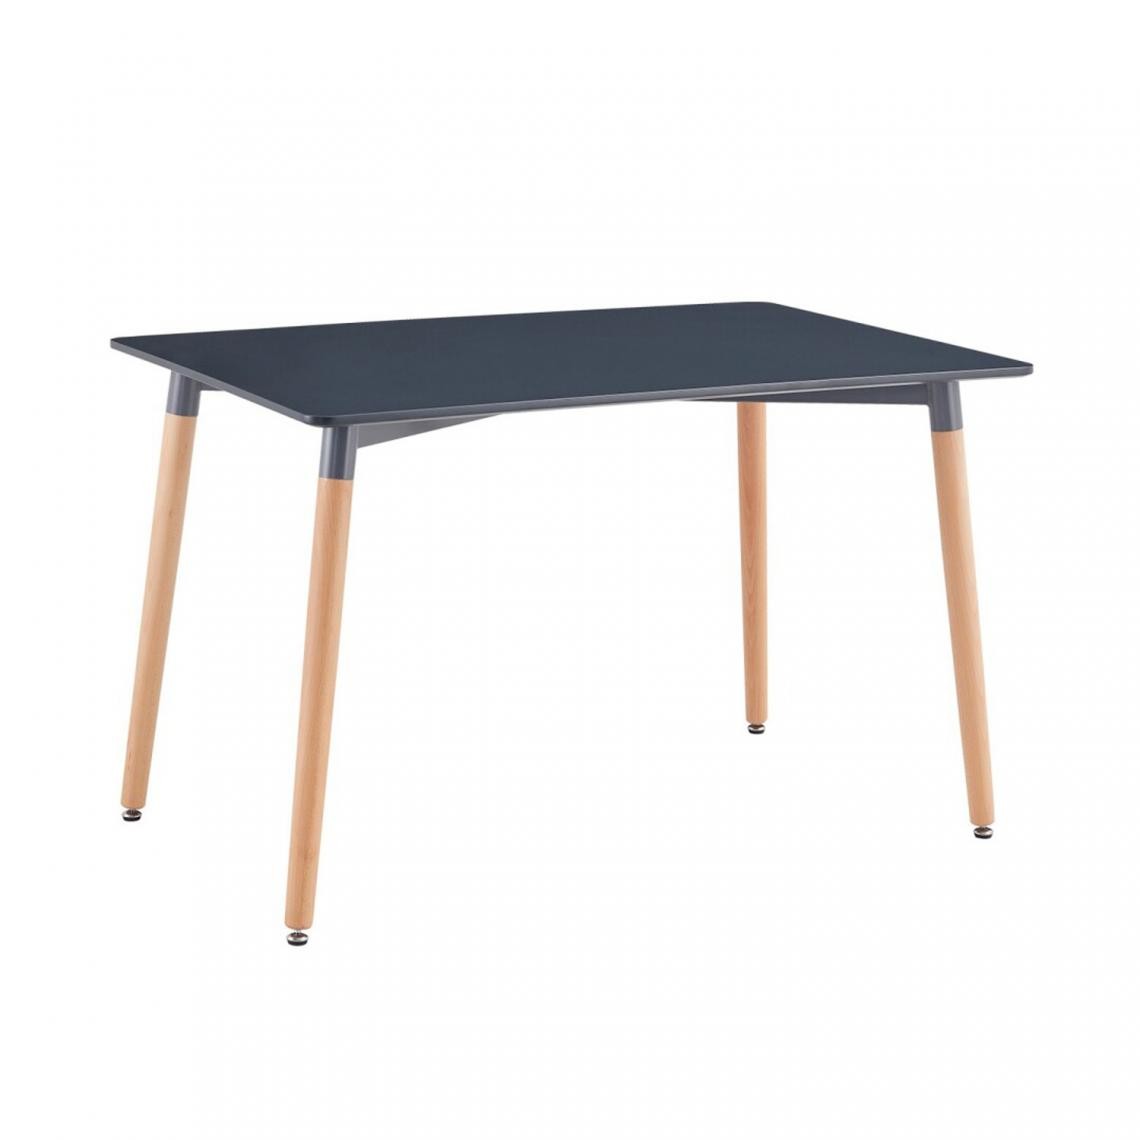 Pegane - Table à manger en bois Noir et pieds coloris chêne - Profondeur 80 x Longueur 120 x Hauteur 74 cm - Tables à manger